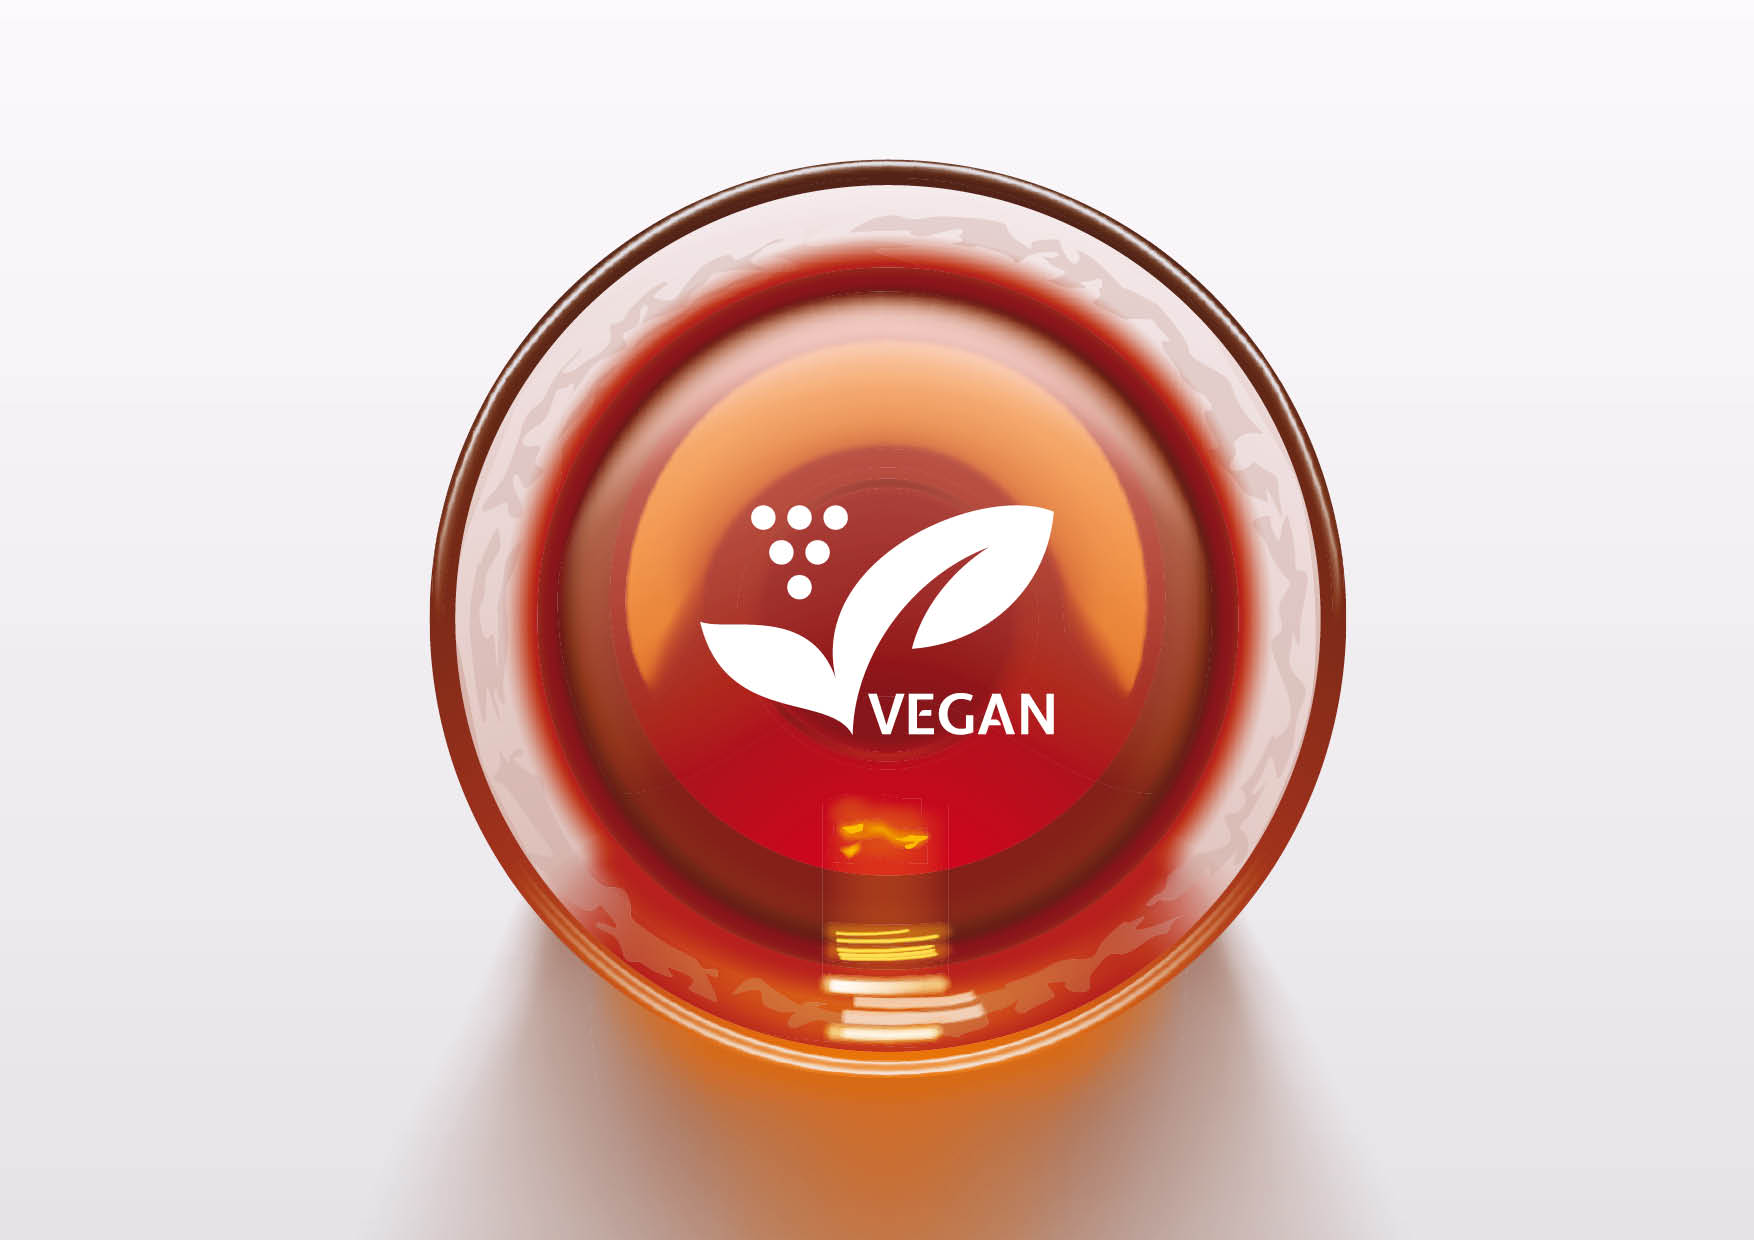 Entwicklung Logodesign / Siegel „Vegan“ für Weingut durch Grafikdesigner Ronald Wissler